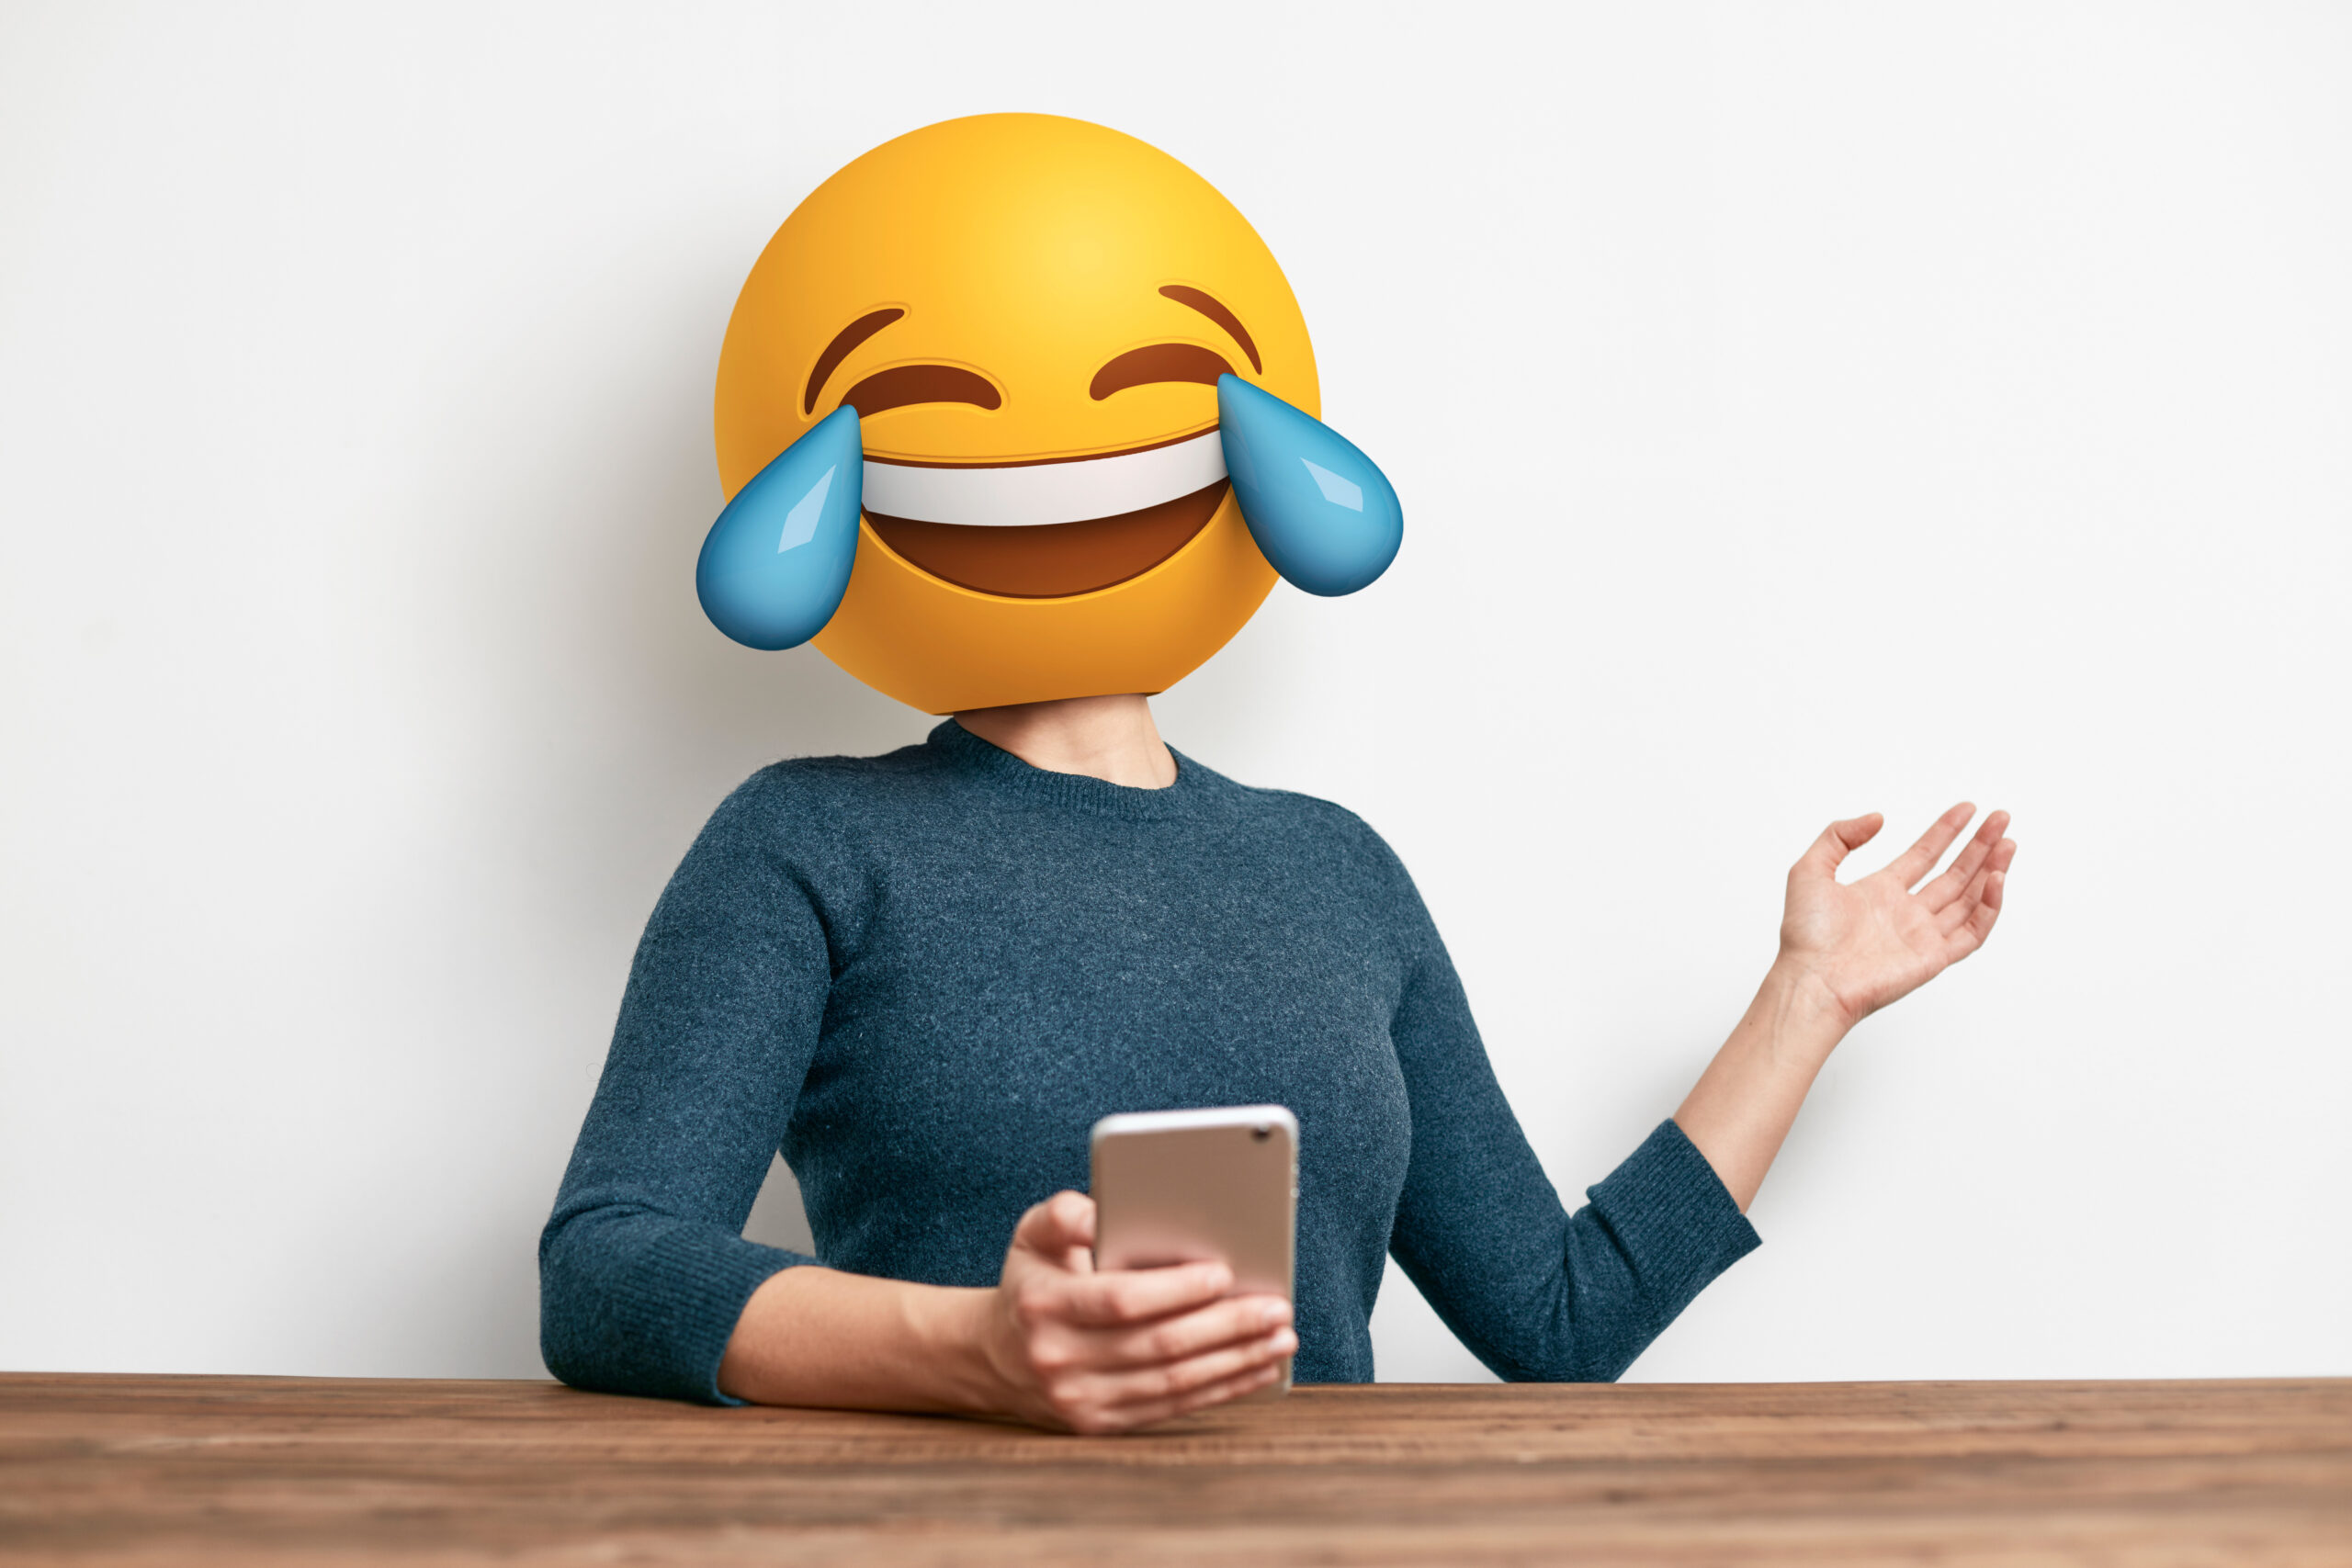 Frau mit Handy in der Hand und Lach-Emoji als Kopf